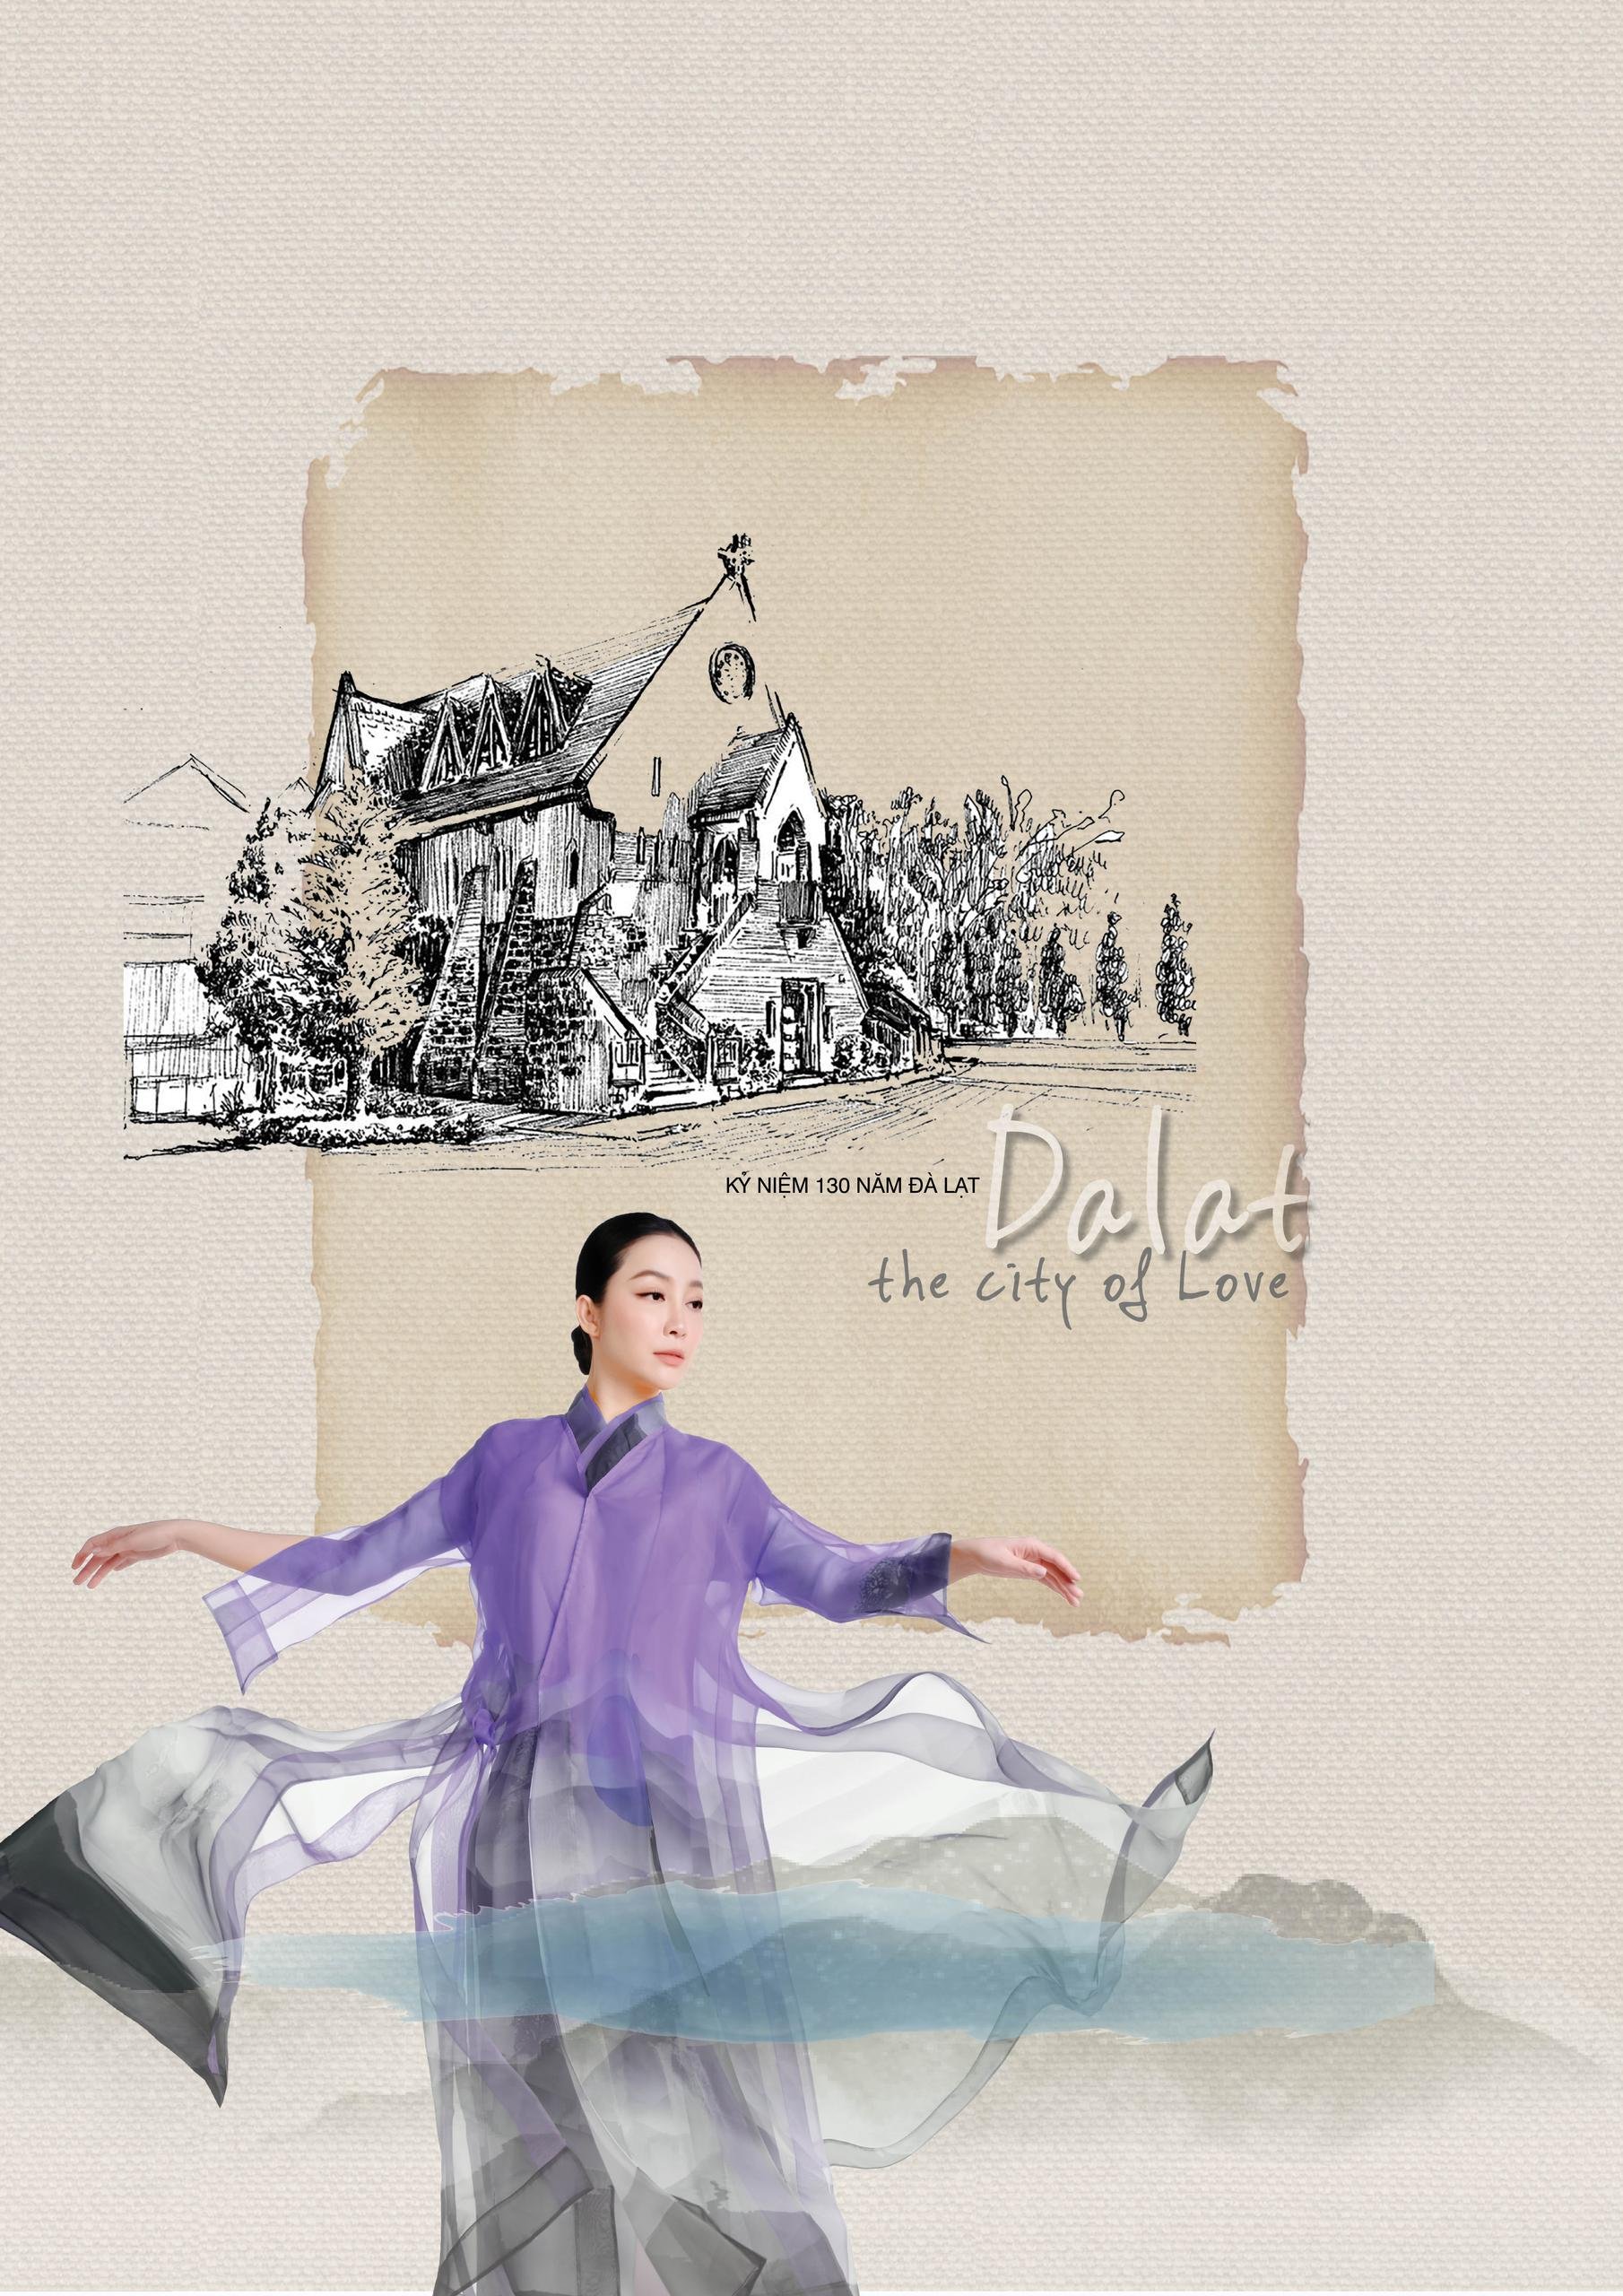 Chương trình nghệ thuật thời trang tơ lụa Dalat - The city of love